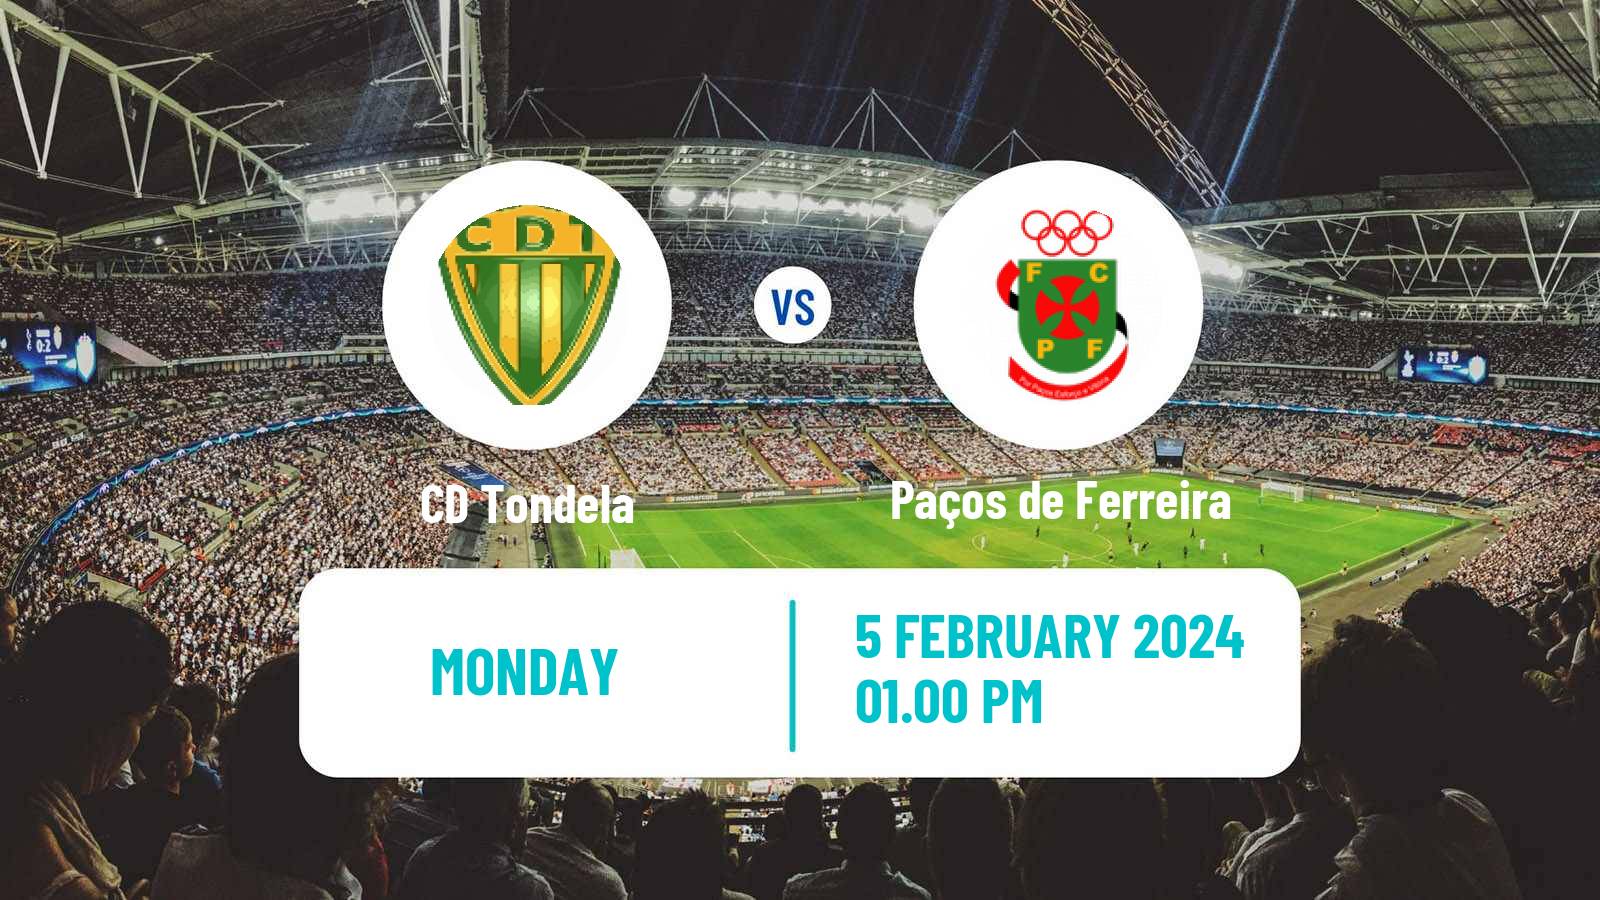 Soccer Portuguese Liga 2 Tondela - Paços de Ferreira